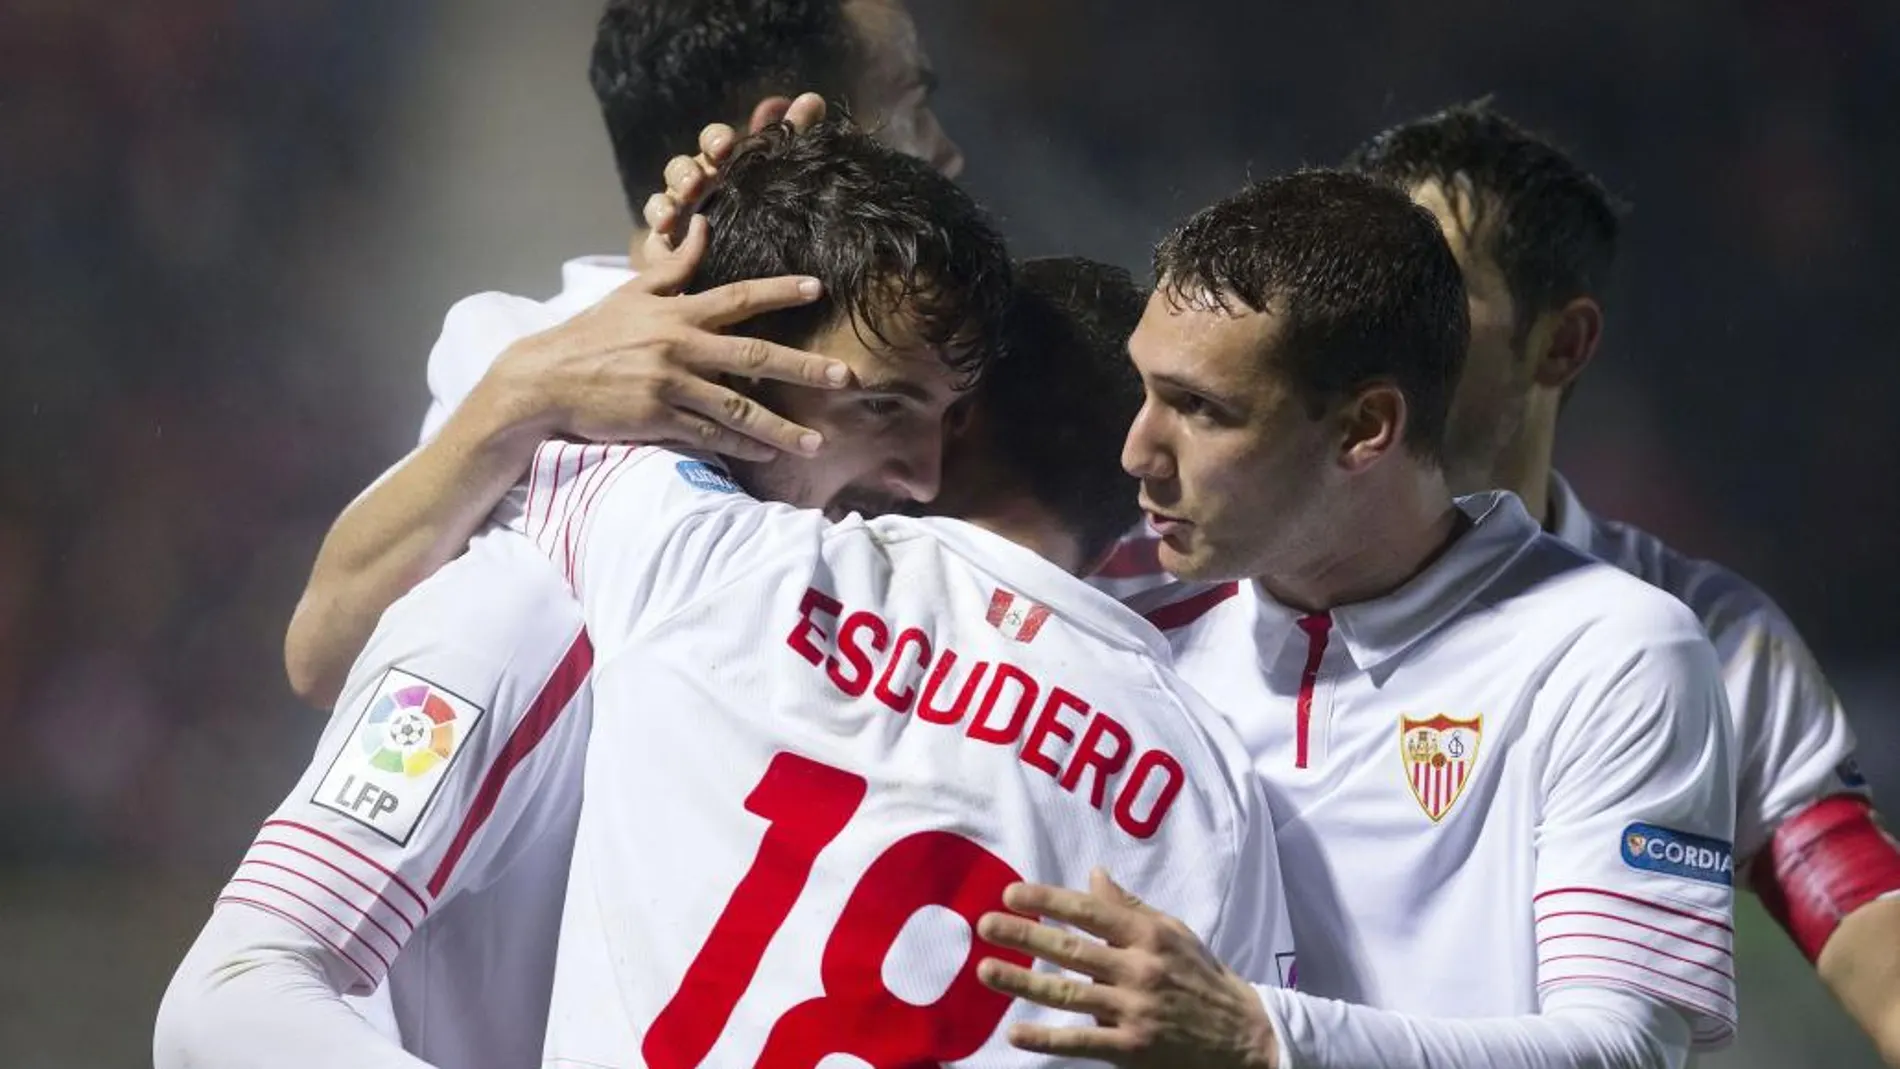 Los jugadores del Sevilla celebran el gol marcado por el delantero del Sevilla Juan Muñoz